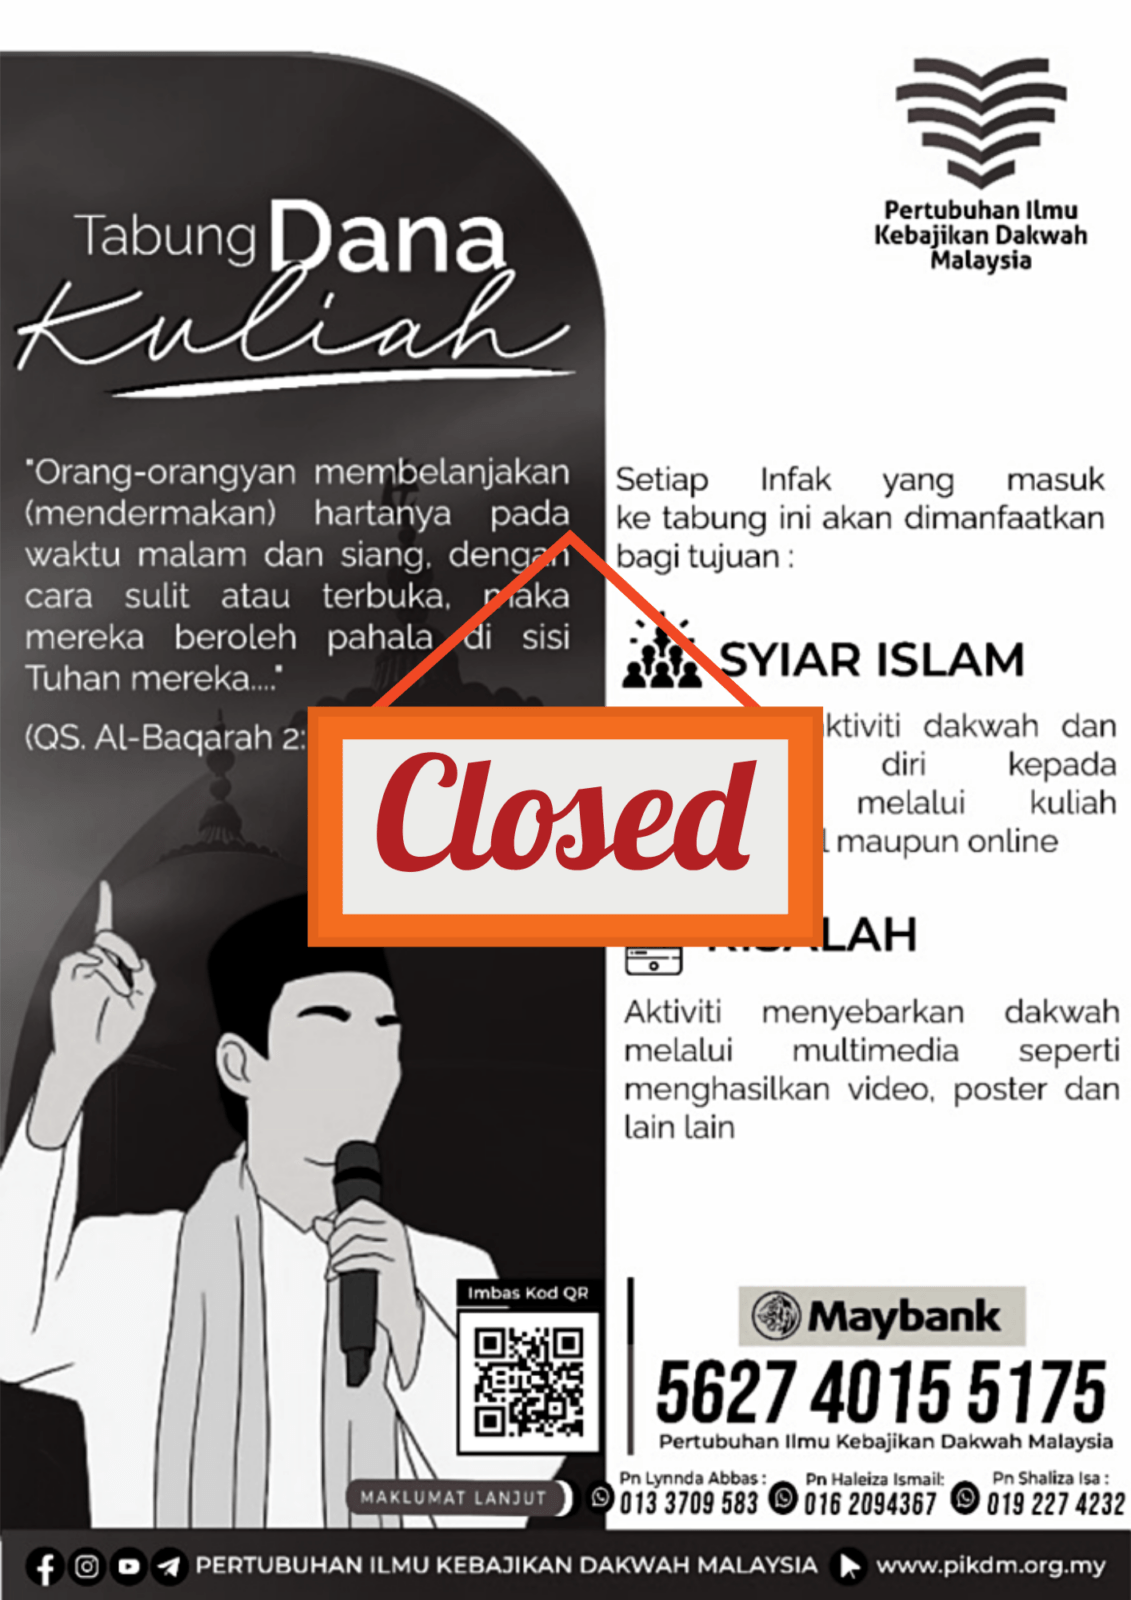 Tabung Dana Kuliah Closed